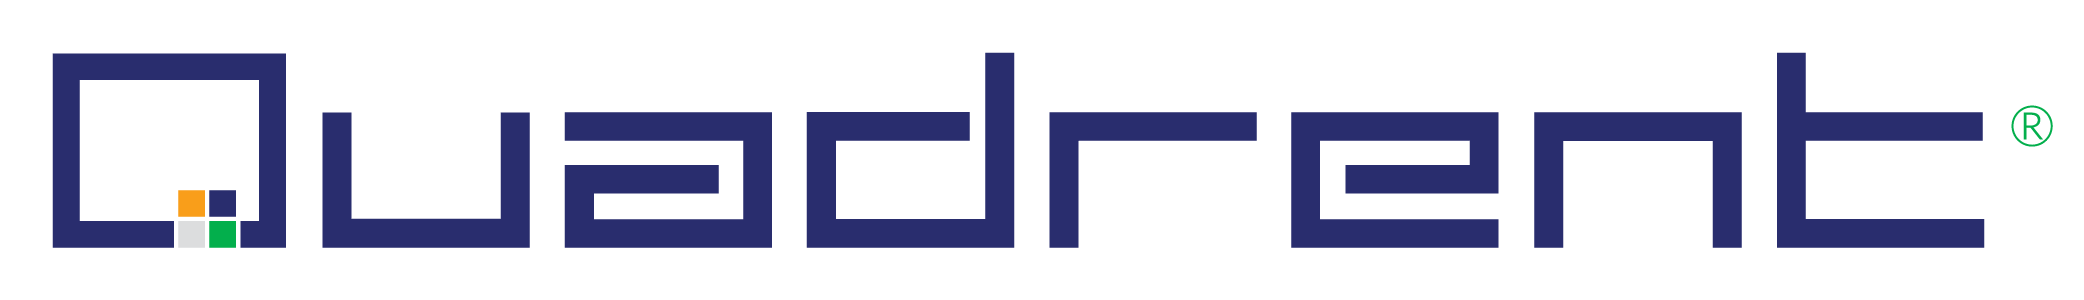 quadrent logo